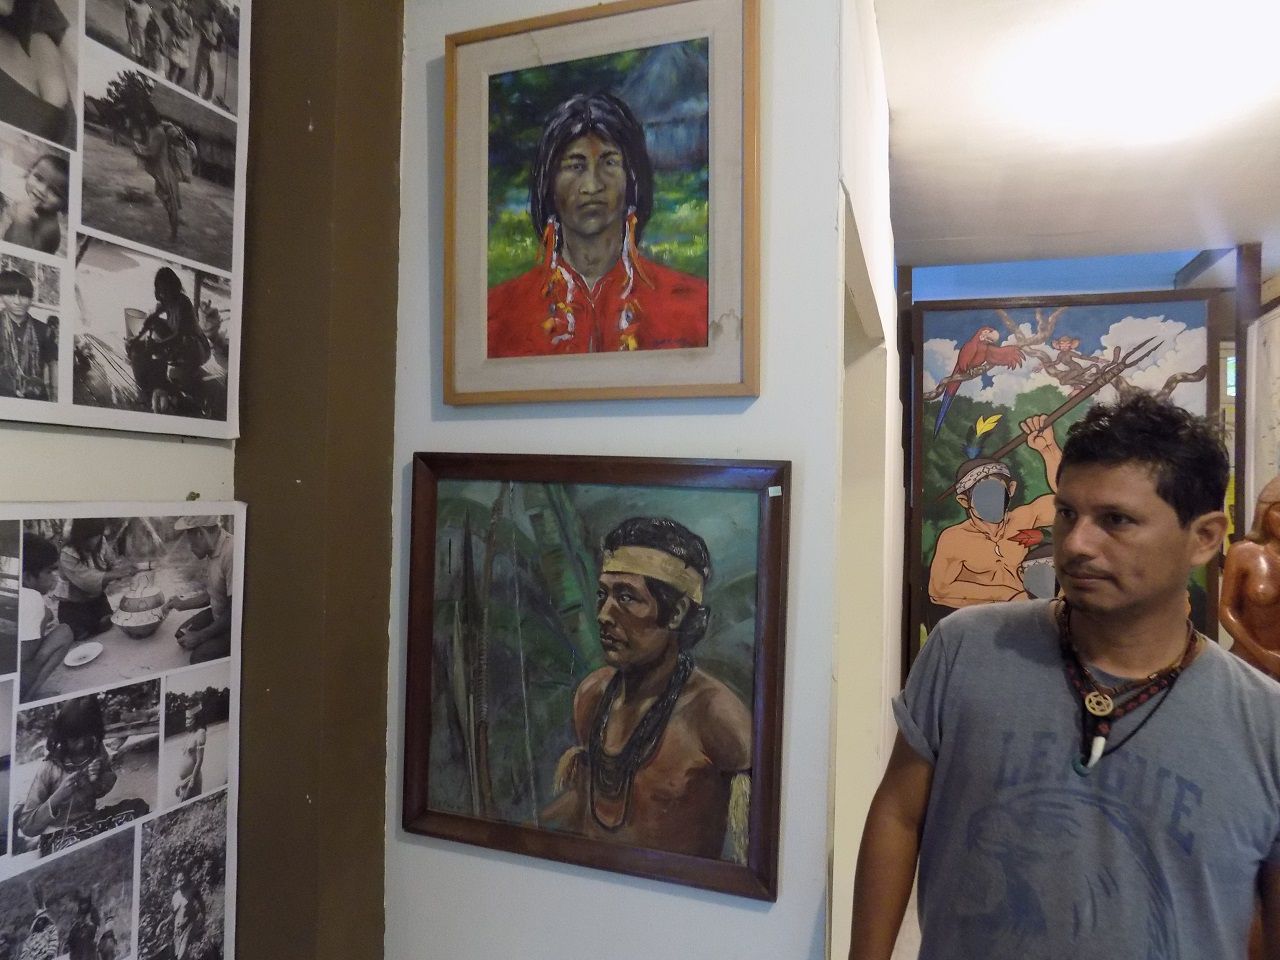 Артуро сохраняет в музее историю племен, хочет сохранить для потомков историю своего народа - Айяуаска.